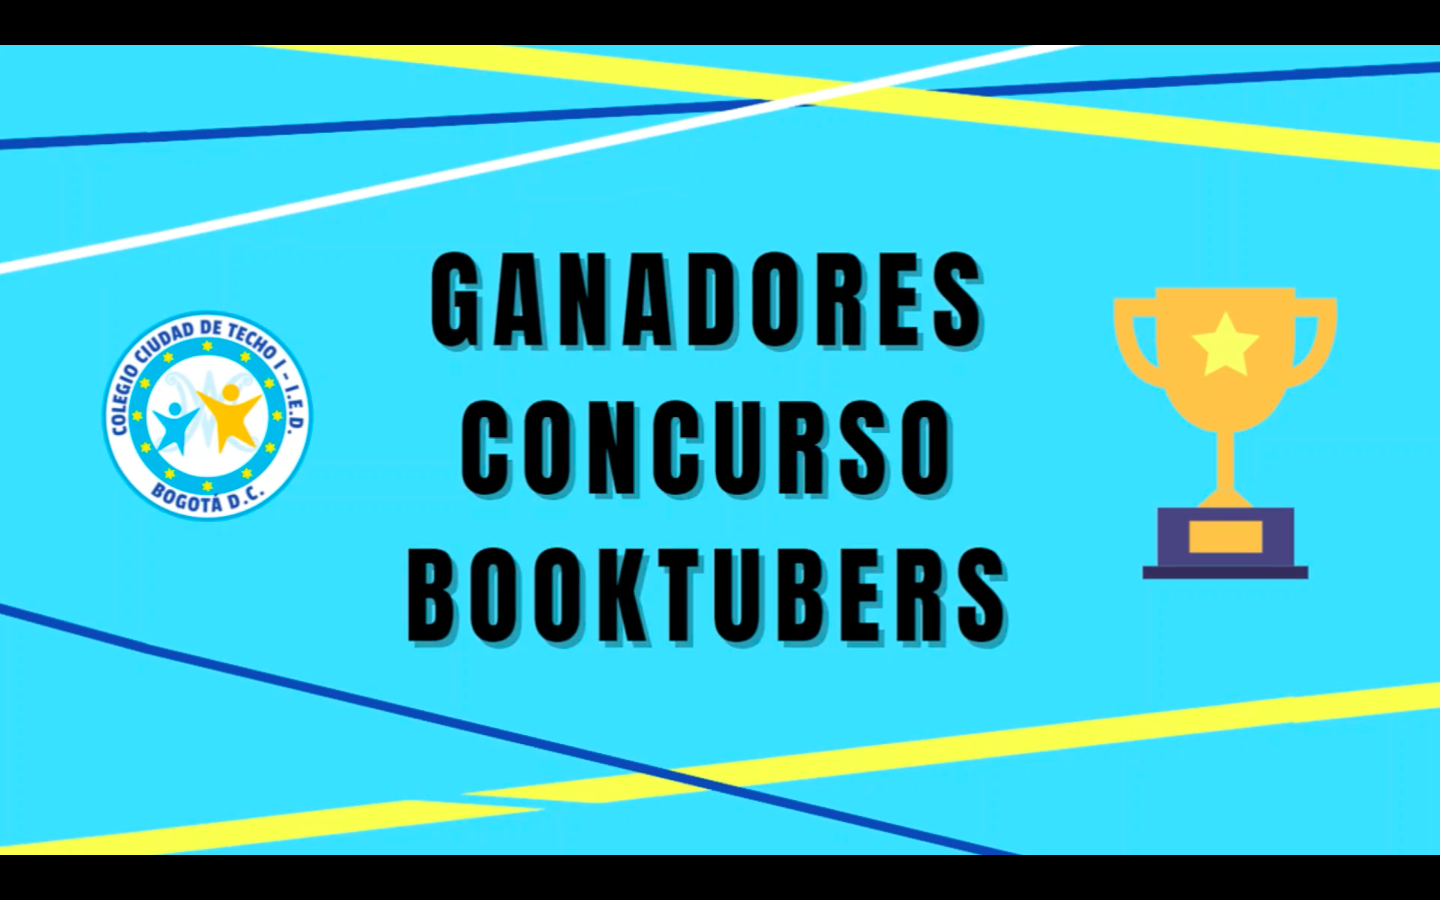 Imagen GANADORES CONCURSO BOOKTUBERS